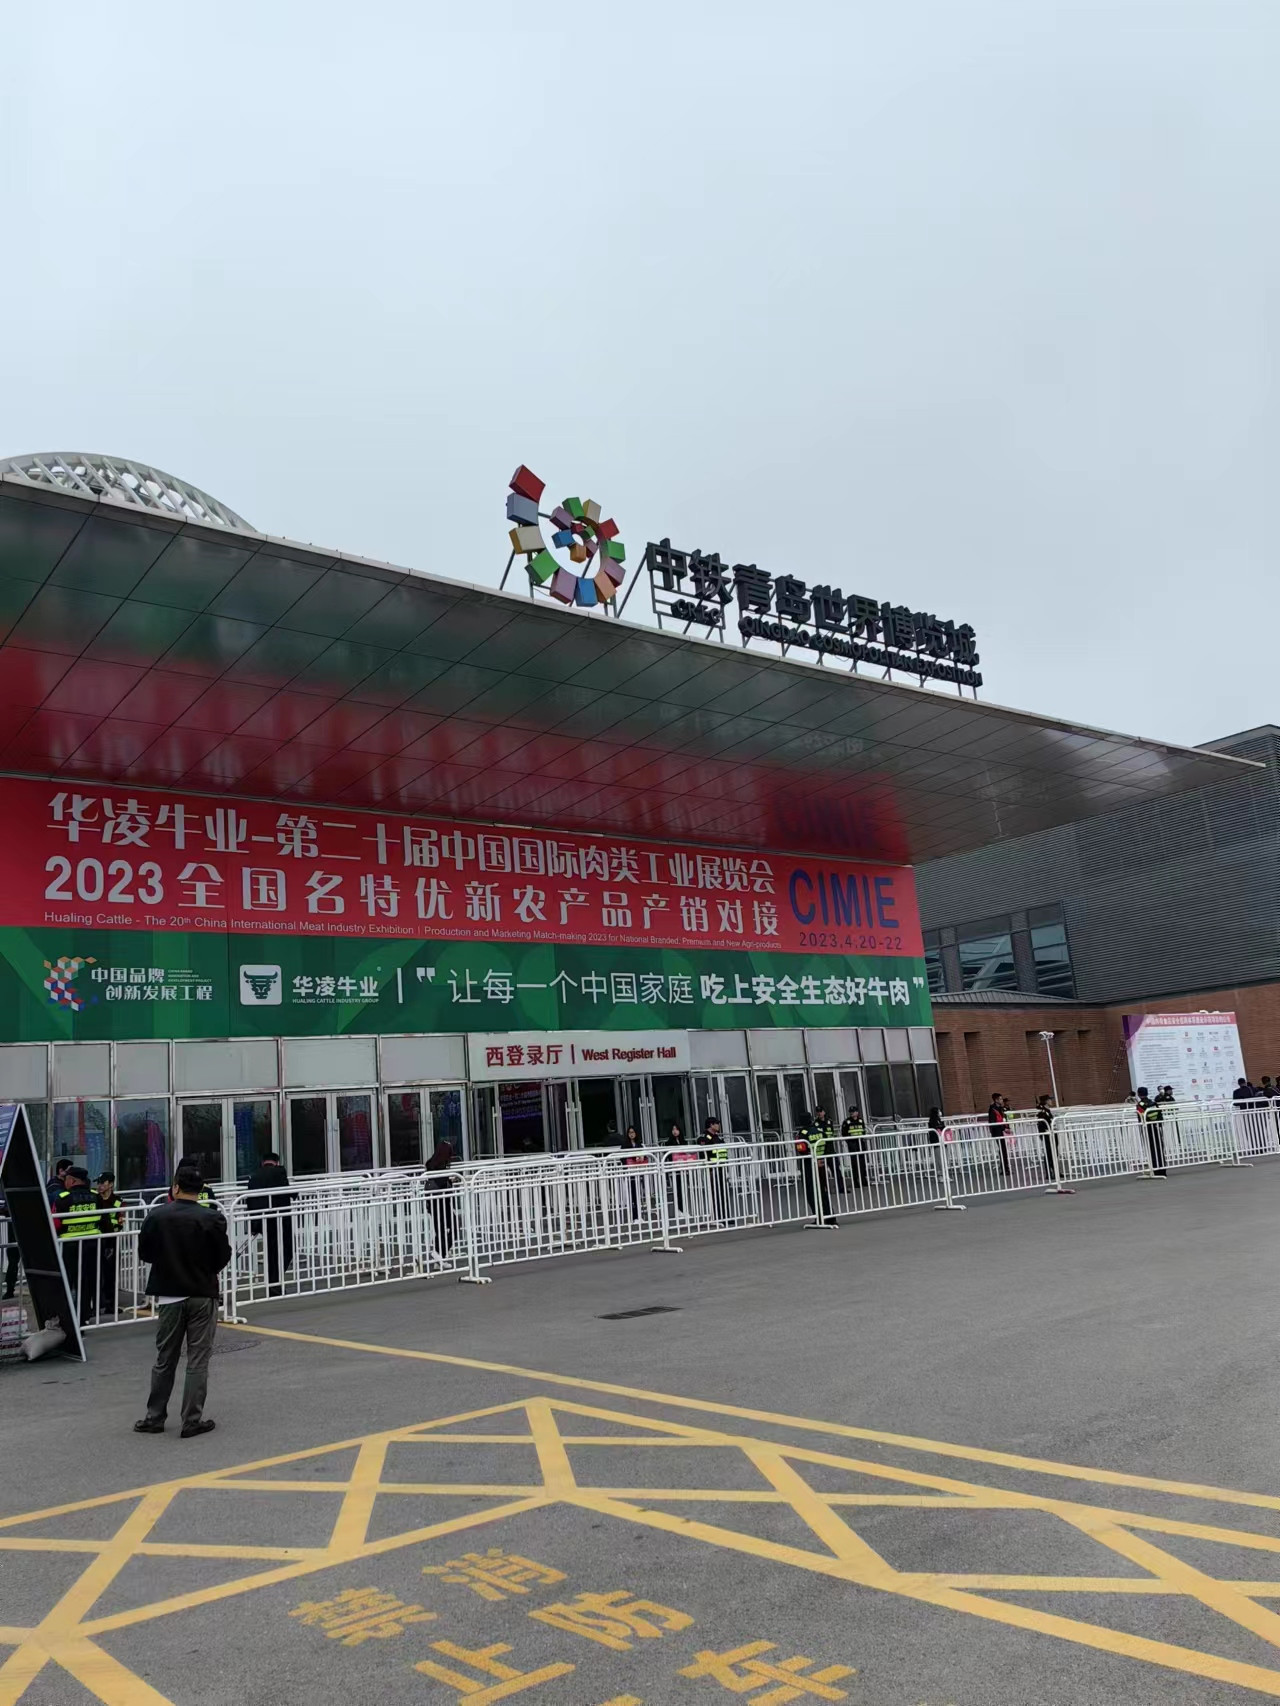 捷迅参加2023中国青岛肉类工业展览会